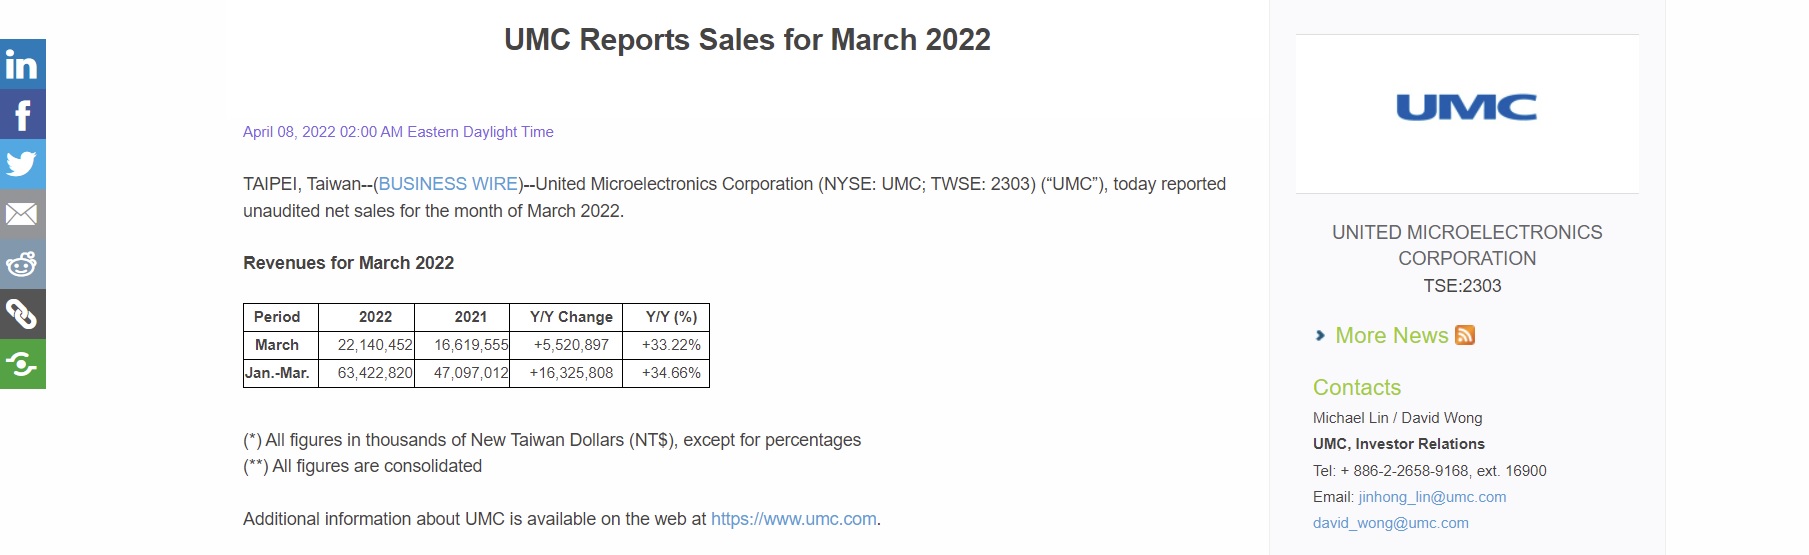 UMC March 2022 Revenue Report.jpg